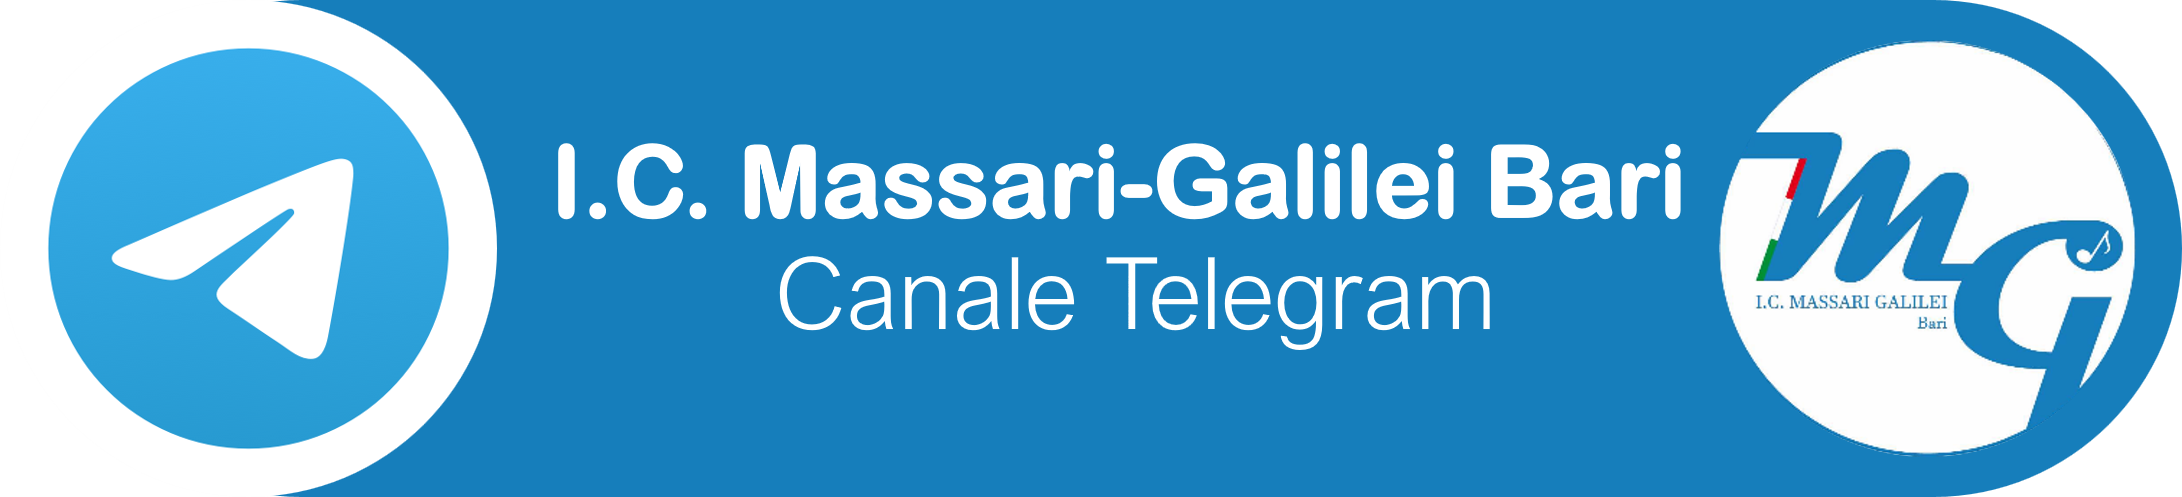 telegramMassari